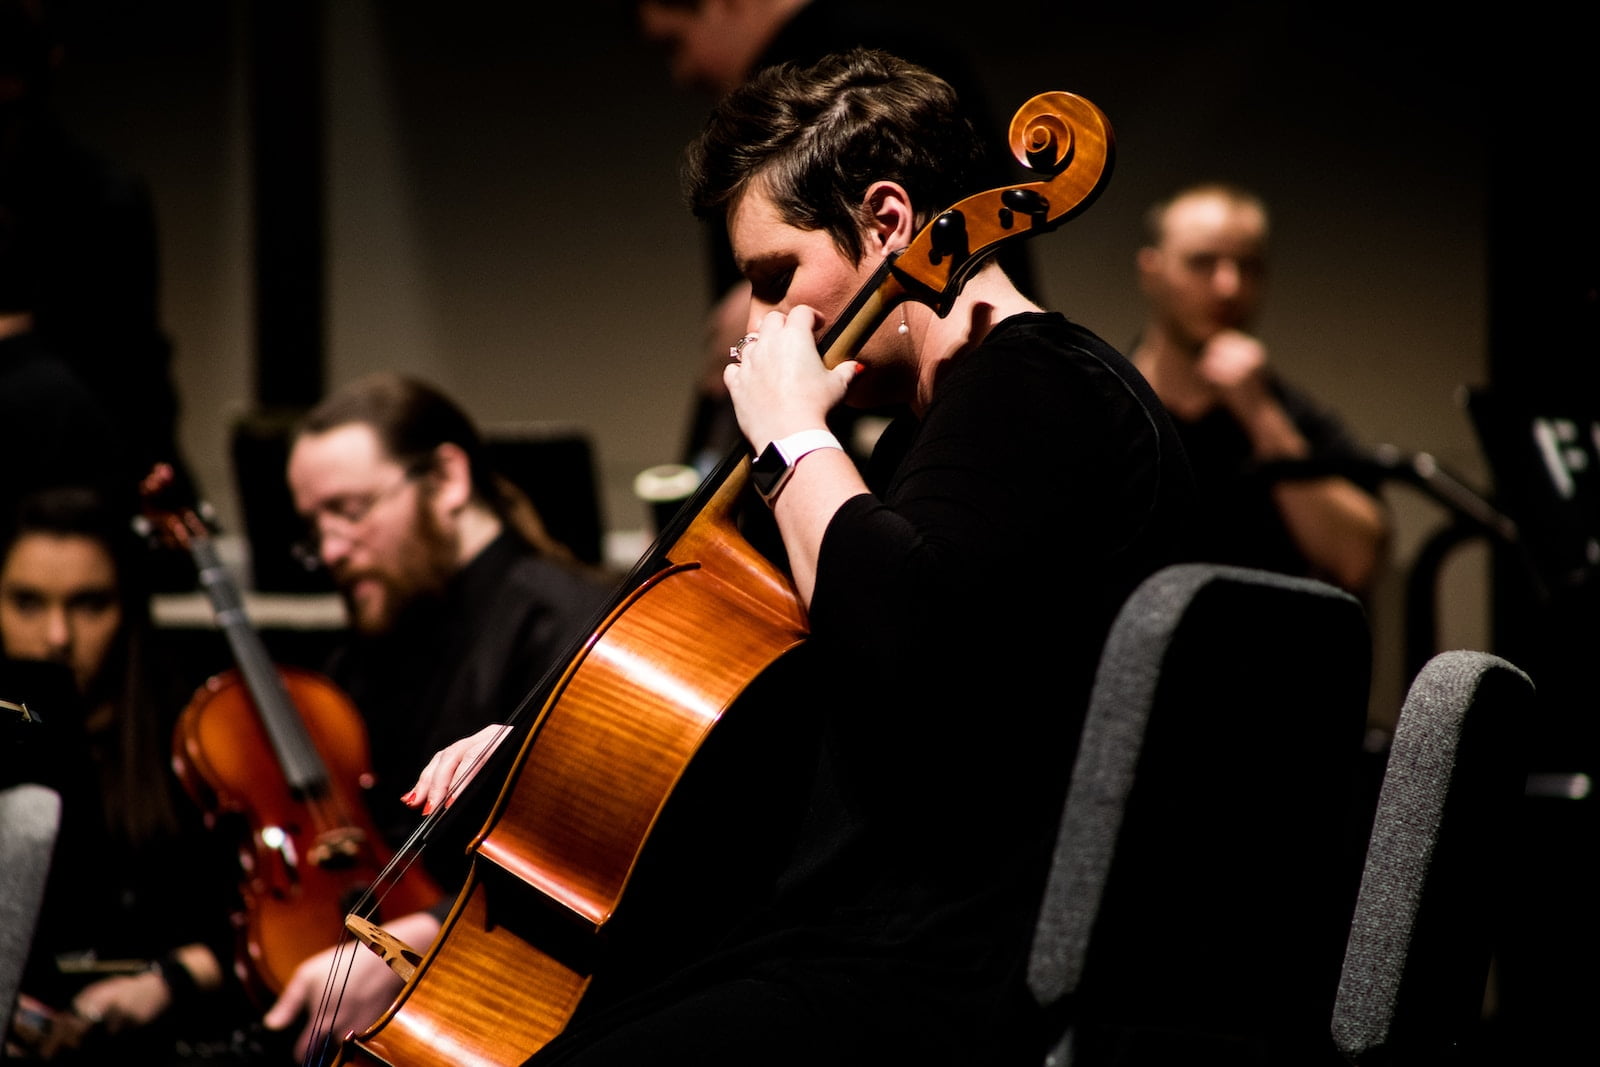 Ouvir música clássica ativa genes associados à atividade cerebral